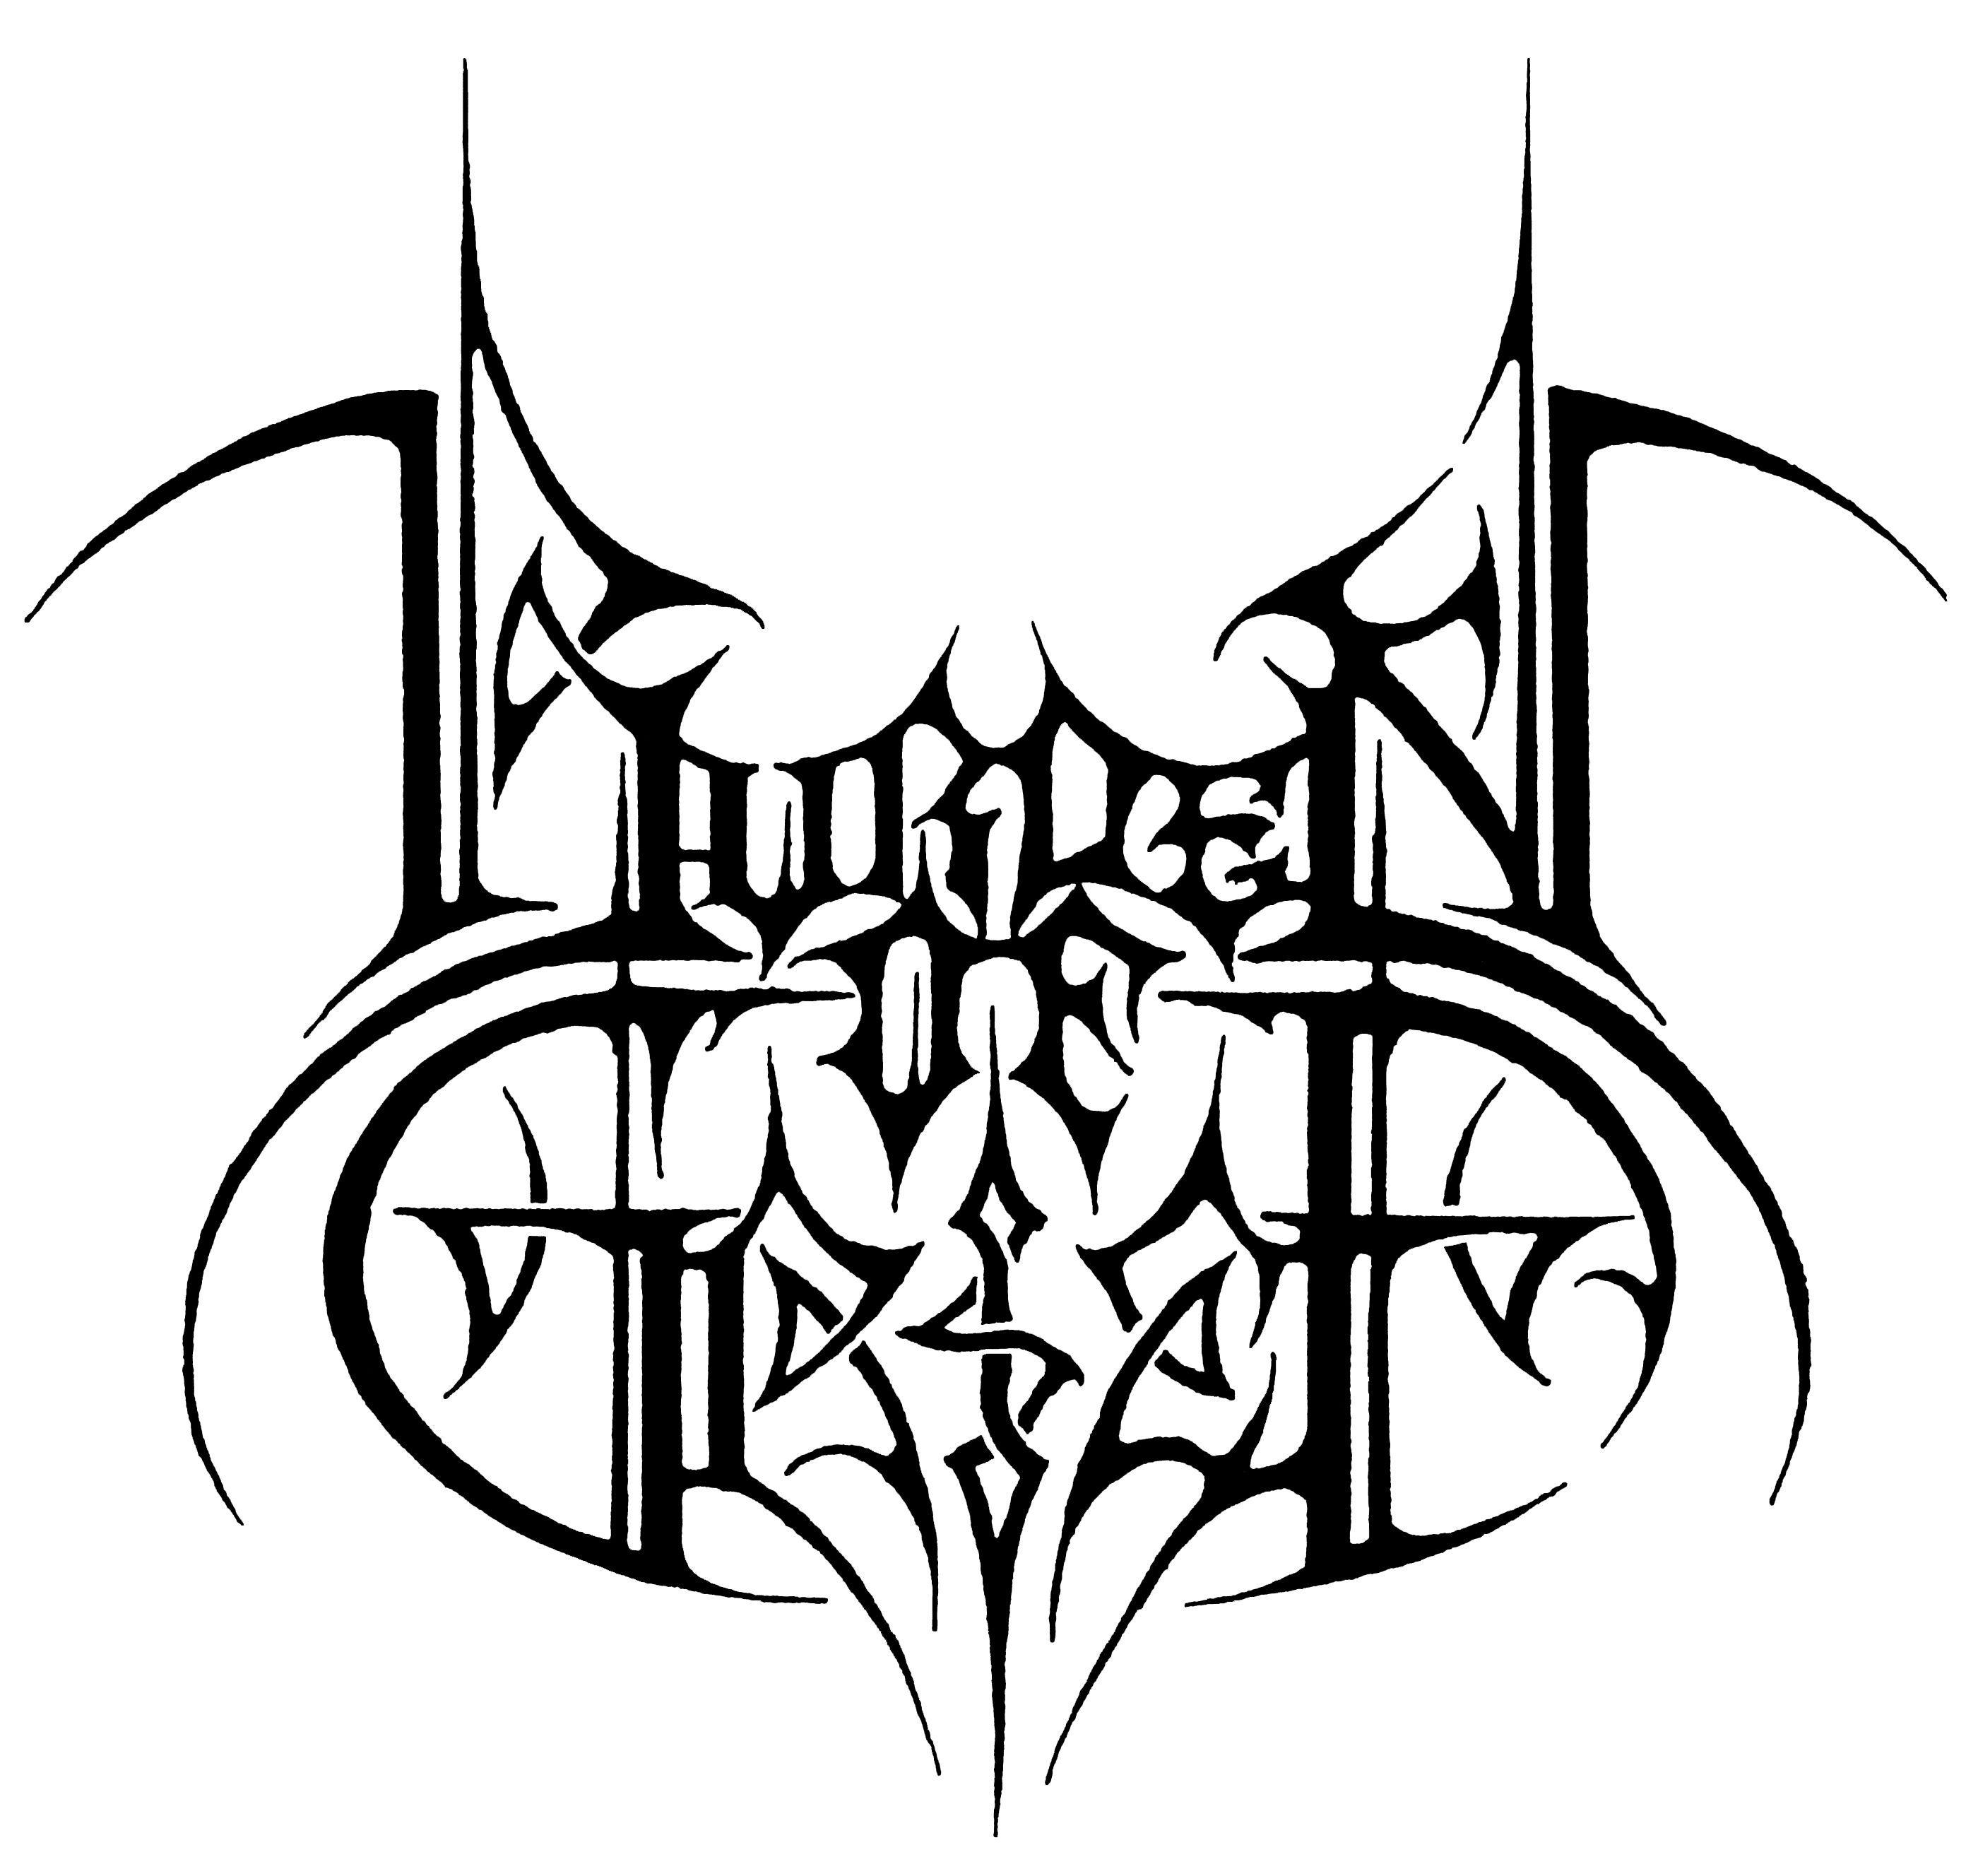 Burden Logo - Burden of Grief logo | noah in 2019 | Metal band logos, Logos, Metal